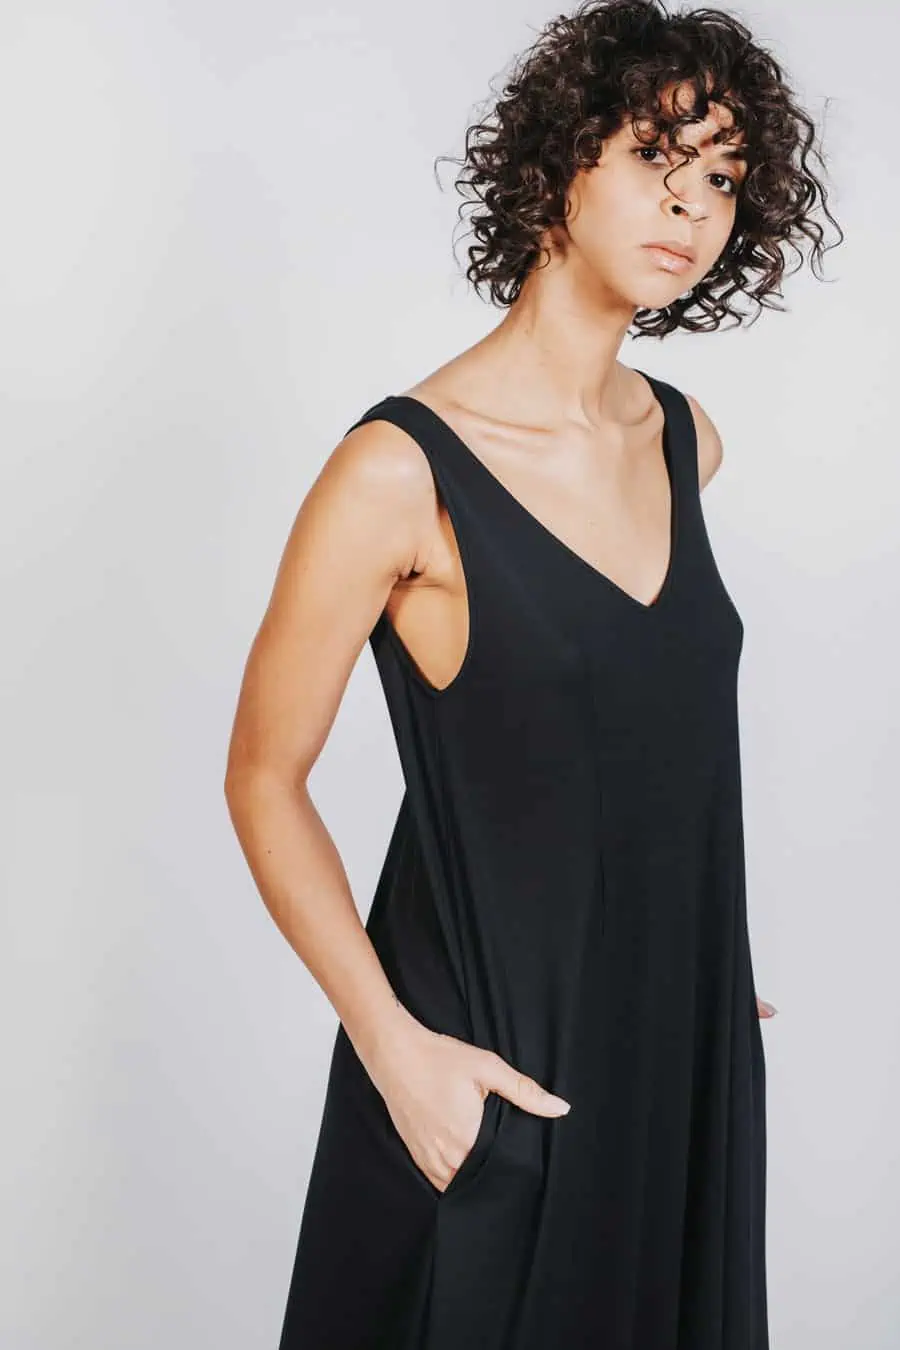 Deep White Black Modell SASHA langes Kleid schwarz, ärmelloses Sommerkleid mit V-Ausschnitt, Ansicht seitlich von rechts